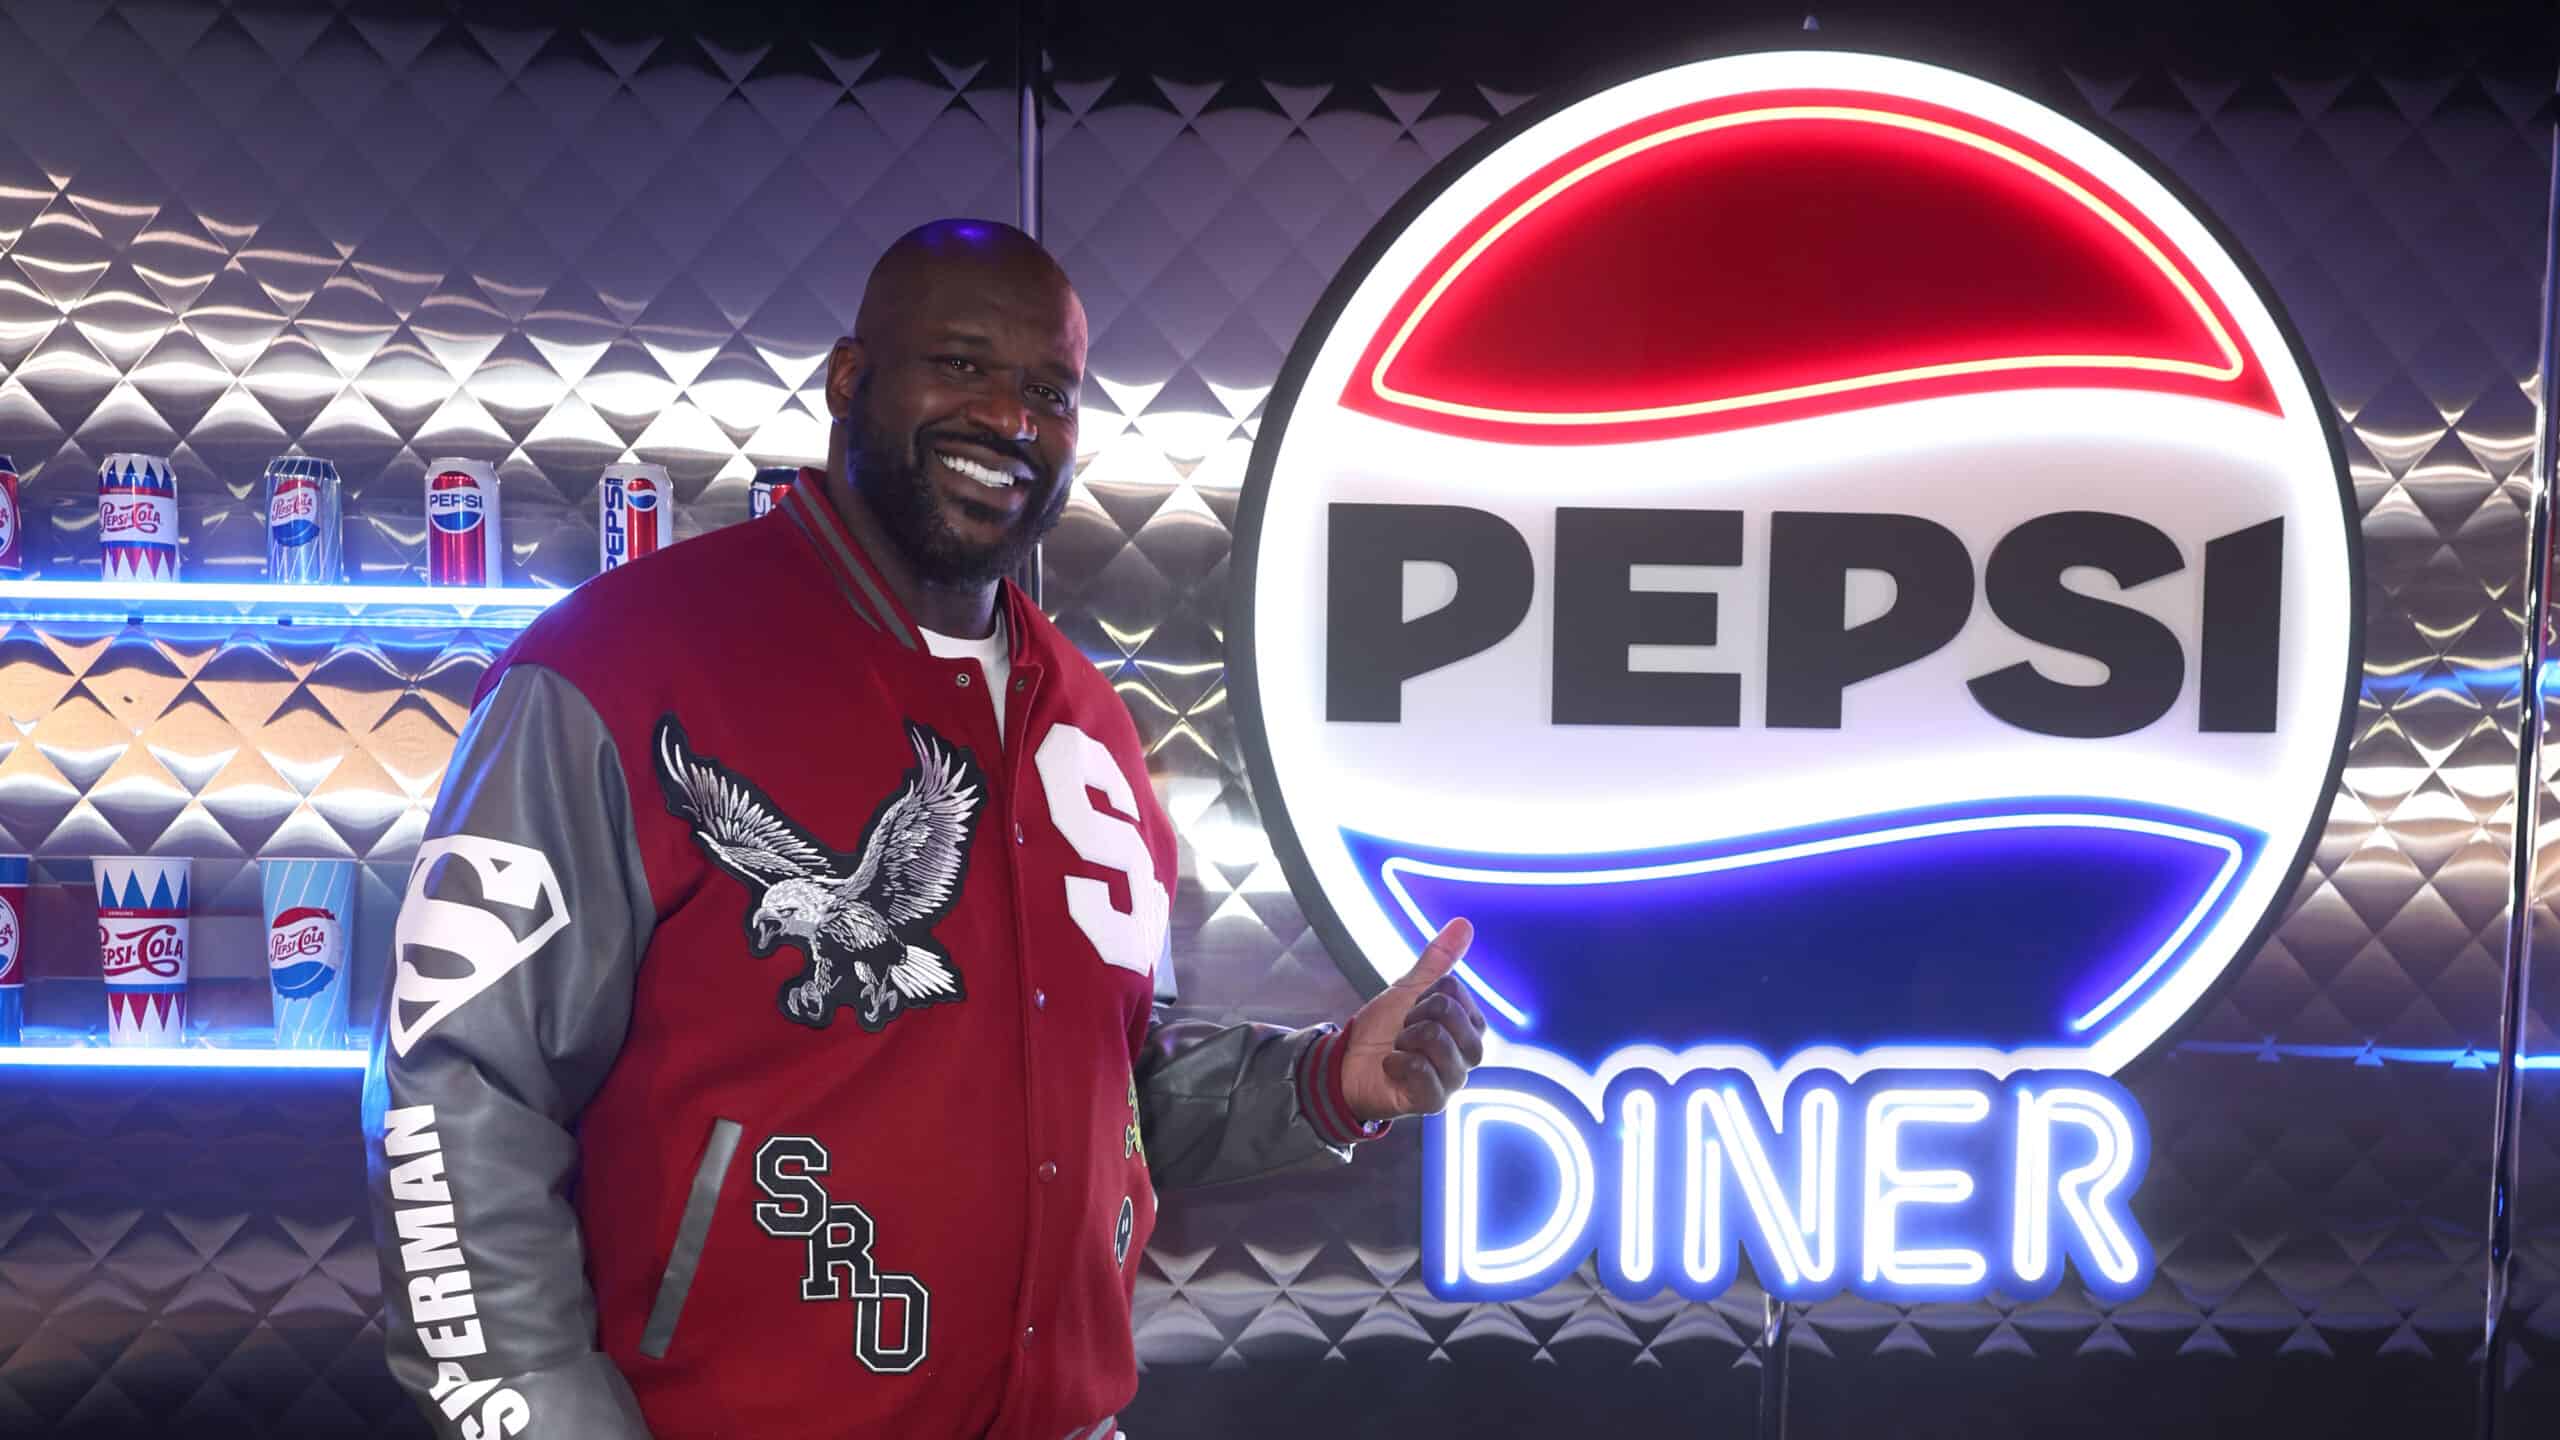 The Pepsi Diner During Super Bowl LVIII in Las Vegas